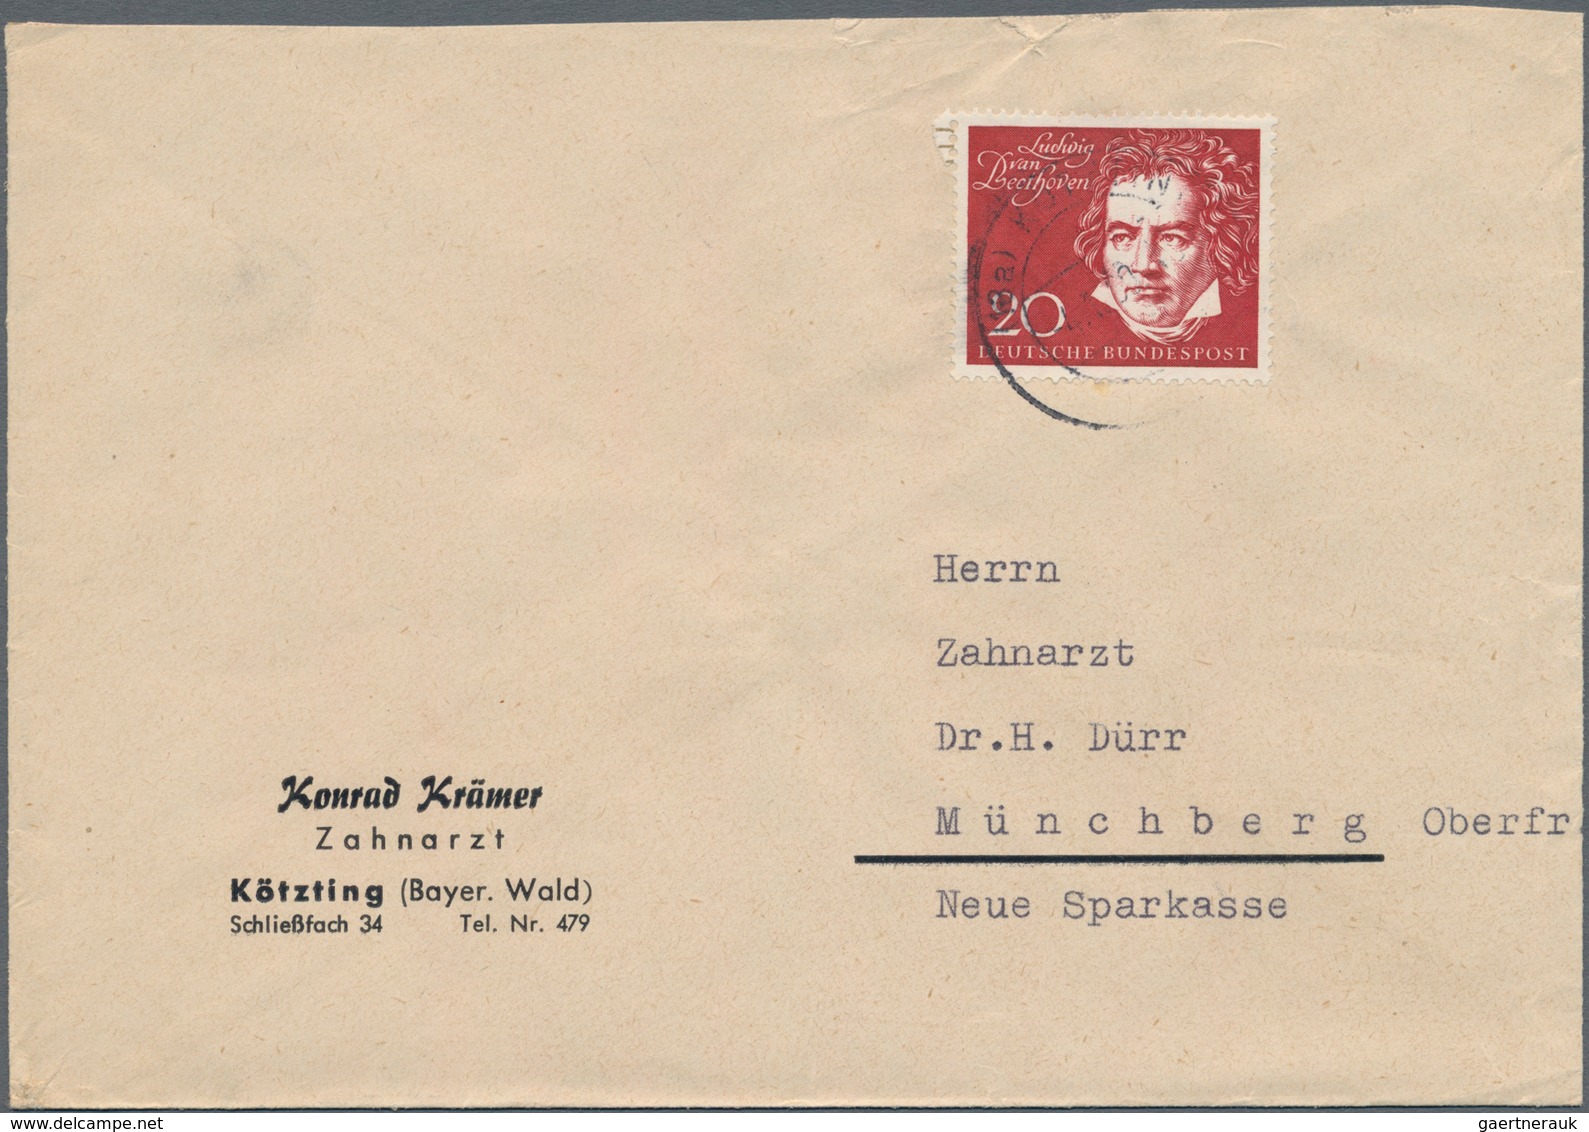 Bundesrepublik Deutschland: 1952/1961, Partie von 61 Briefen/Karten mit Sondermarken-Einzel- und Meh